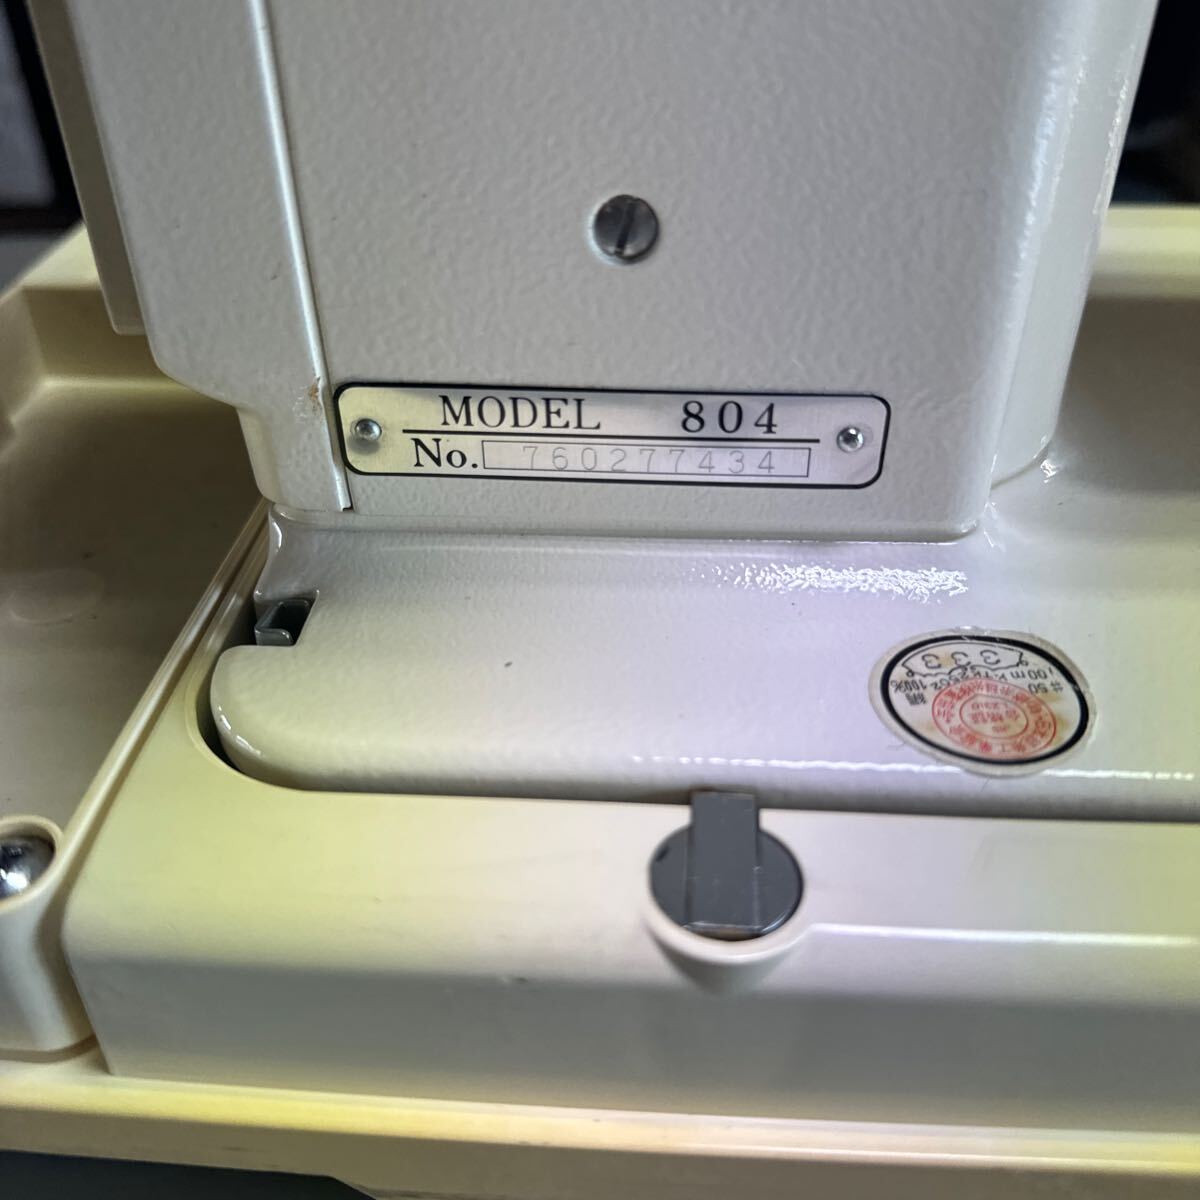 ジャノメ ミシン MODEL 804 JANOME 通電フットペダルで針の上下のみ確認済み ジャンク品 中古 _画像4